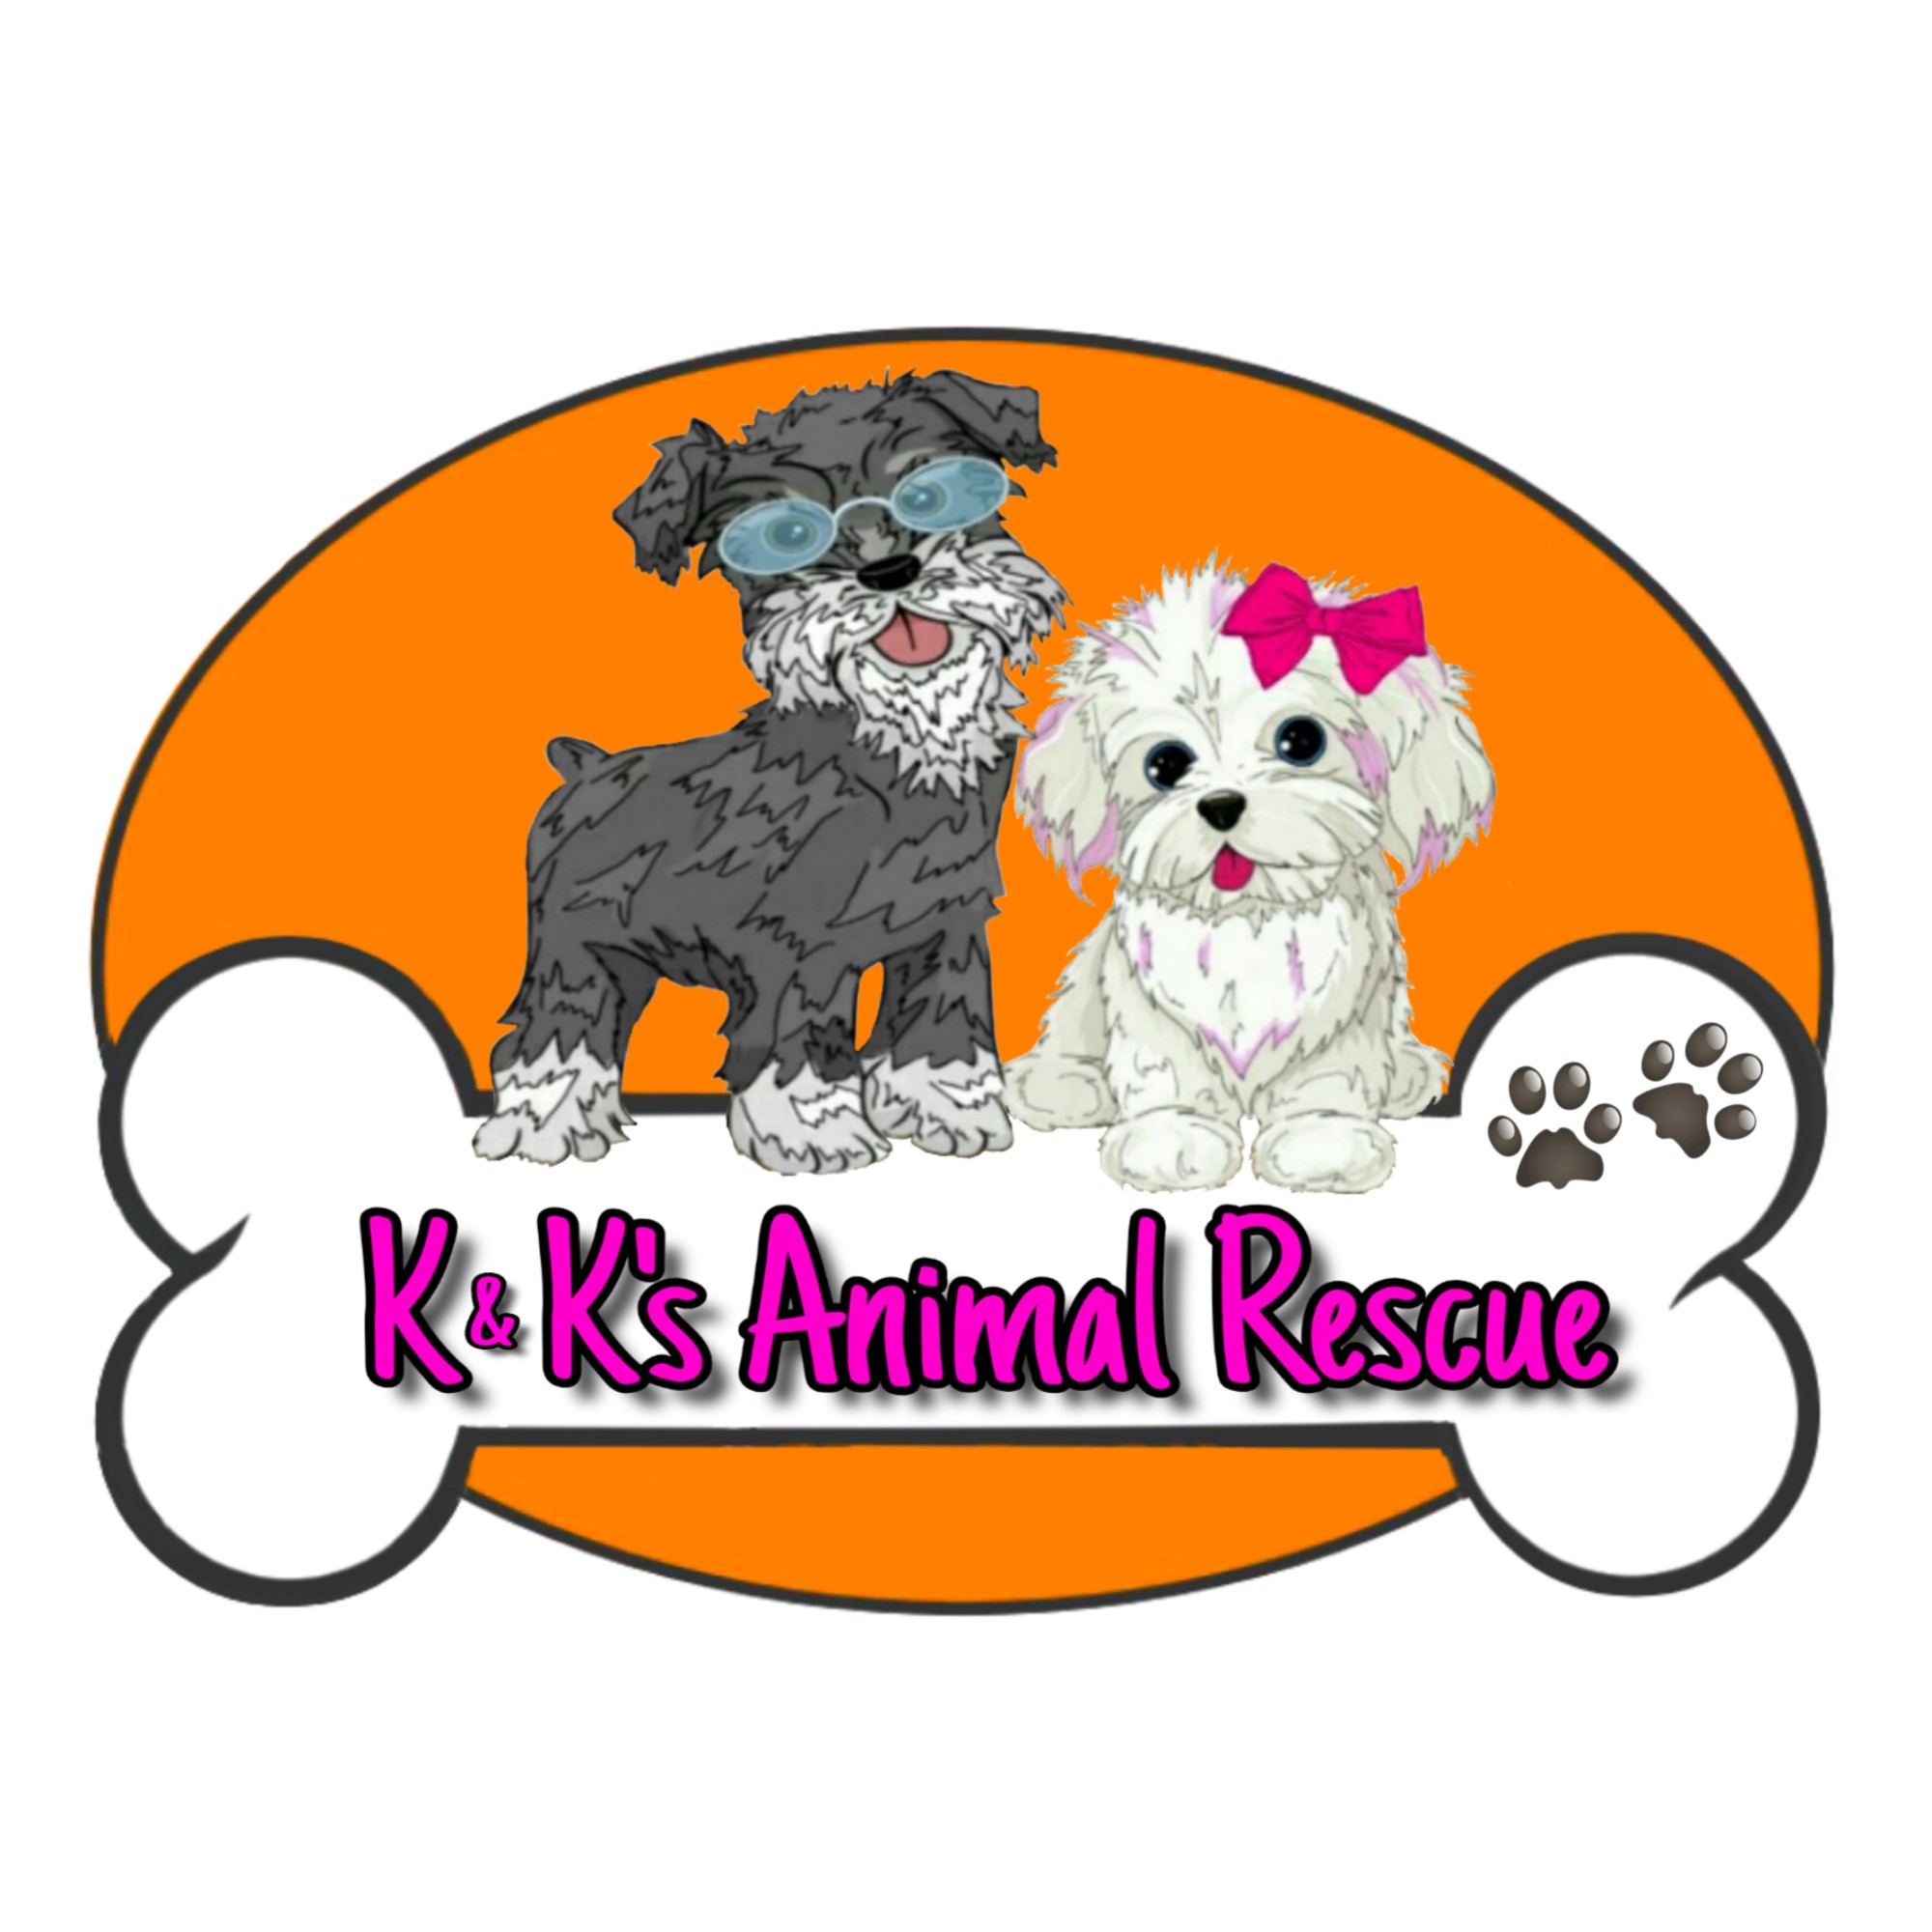 K&K's Animal Rescue